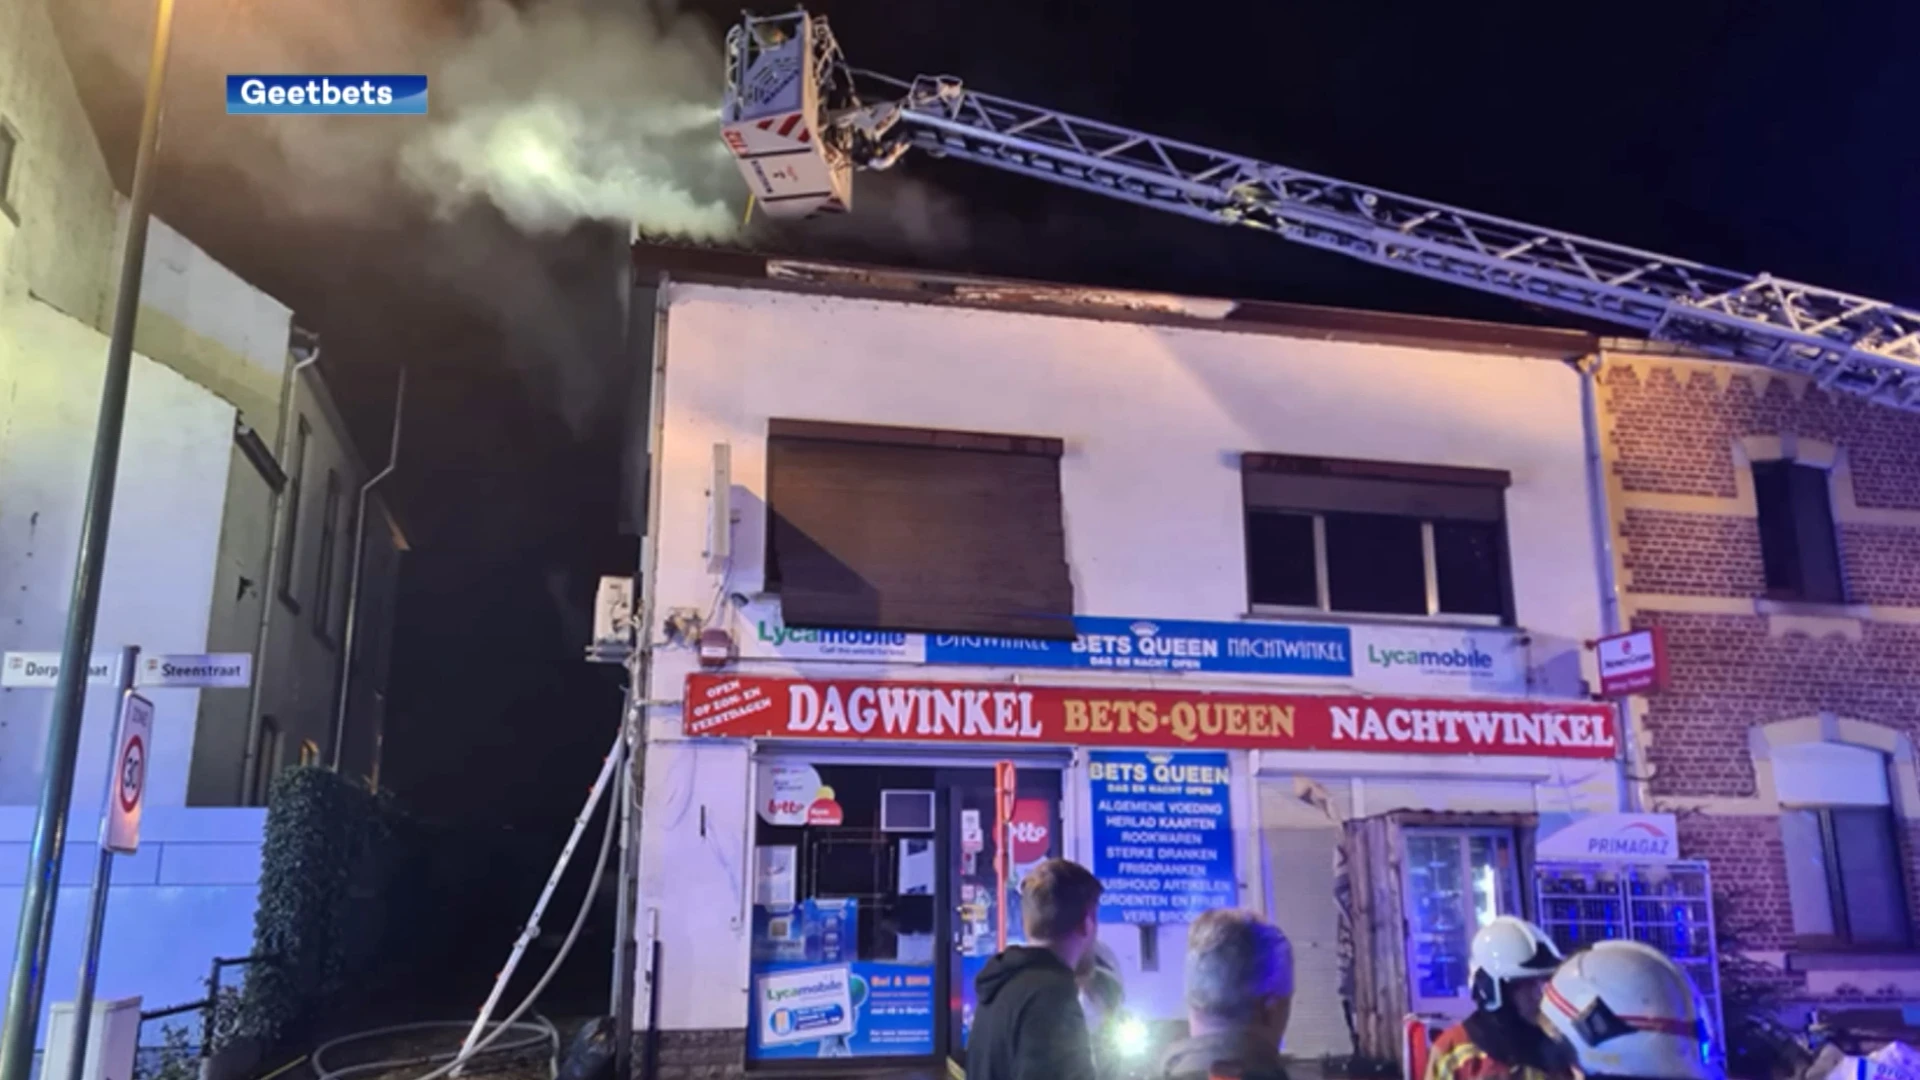 Nachtwinkel in Geetbets vernield door zware brand, niemand raakt gewond